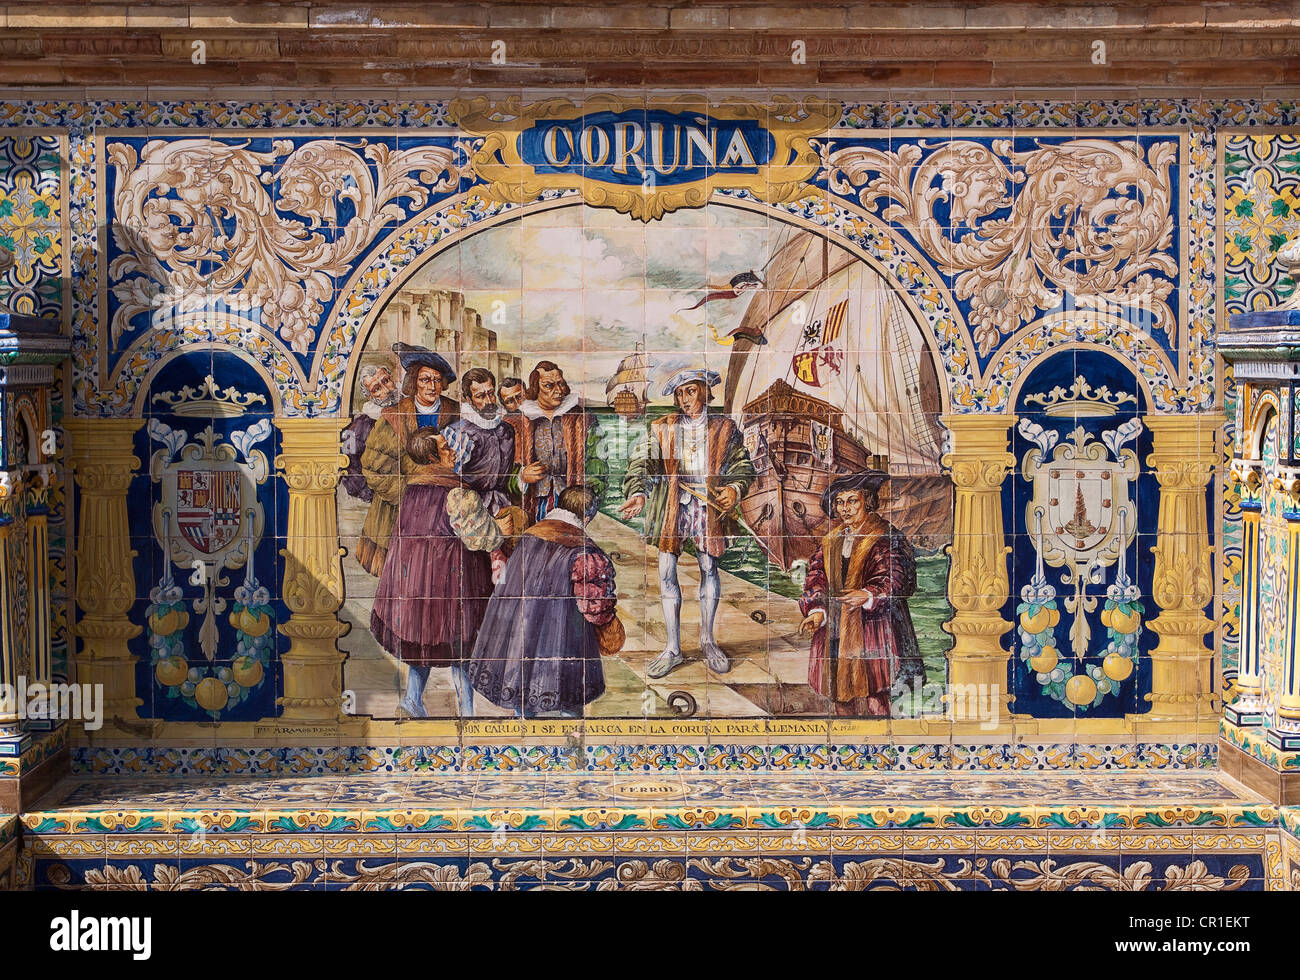 Mosaïque de carreaux d'une province d'Espagne, la Plaza de España, Séville, Espagne, Europe Banque D'Images